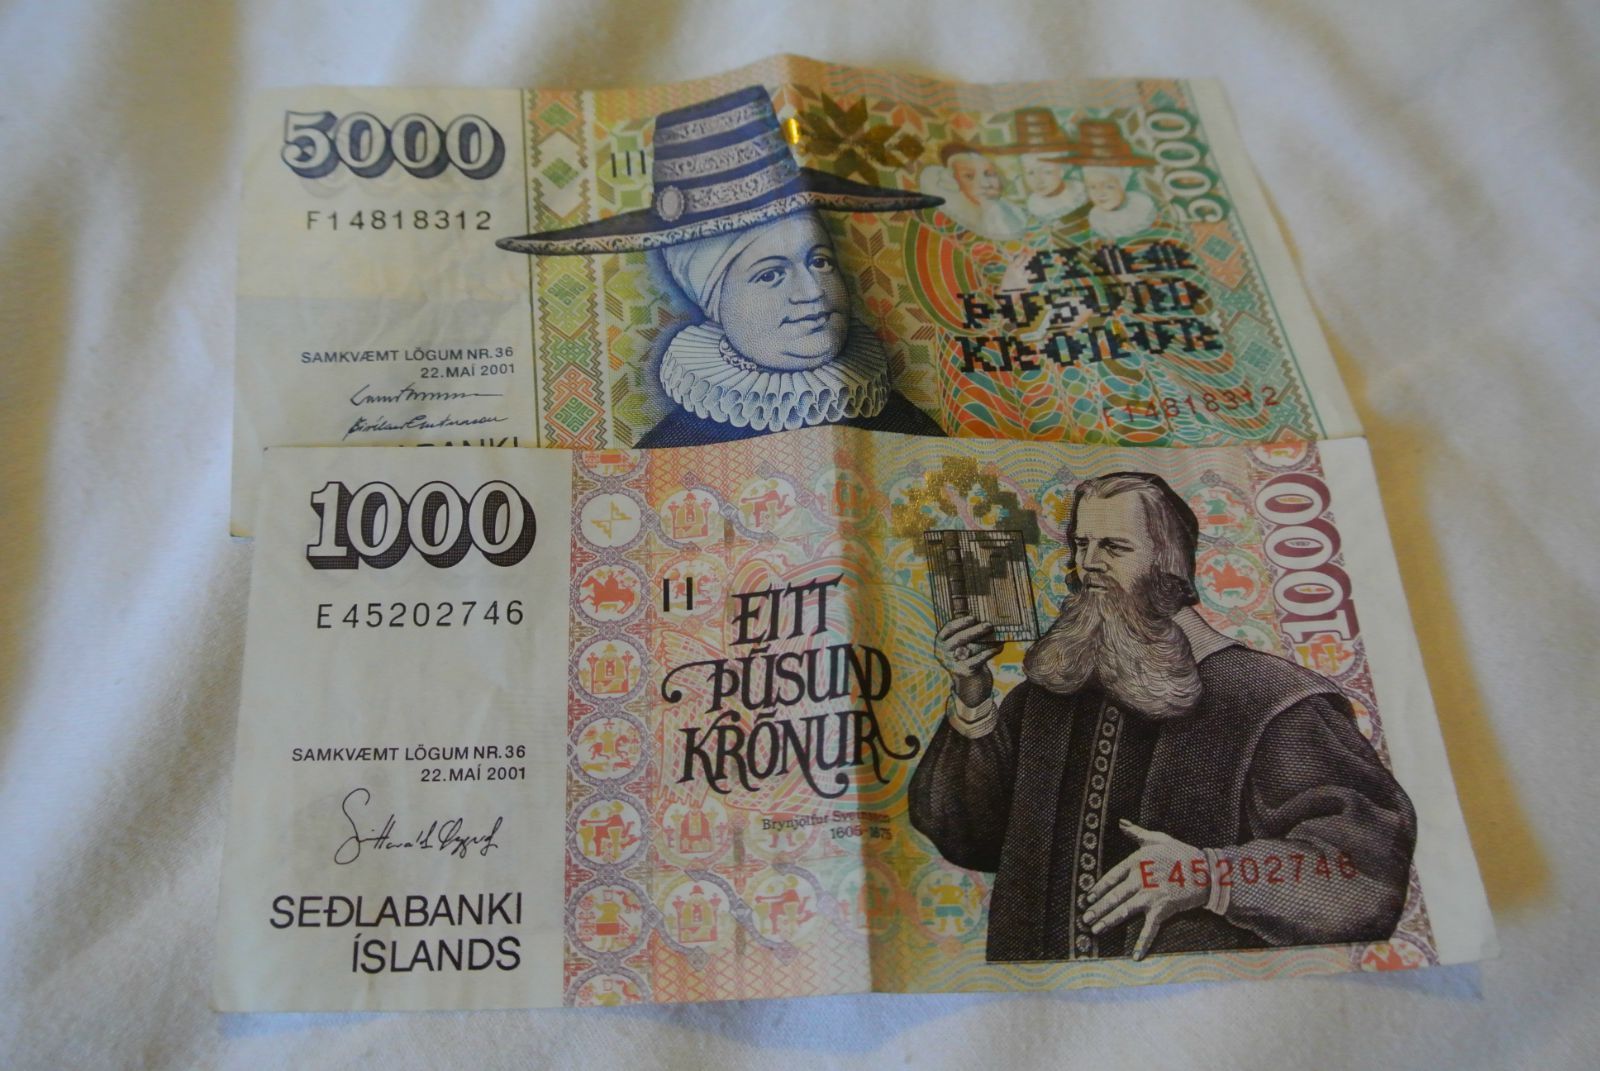 冰岛的货币图片